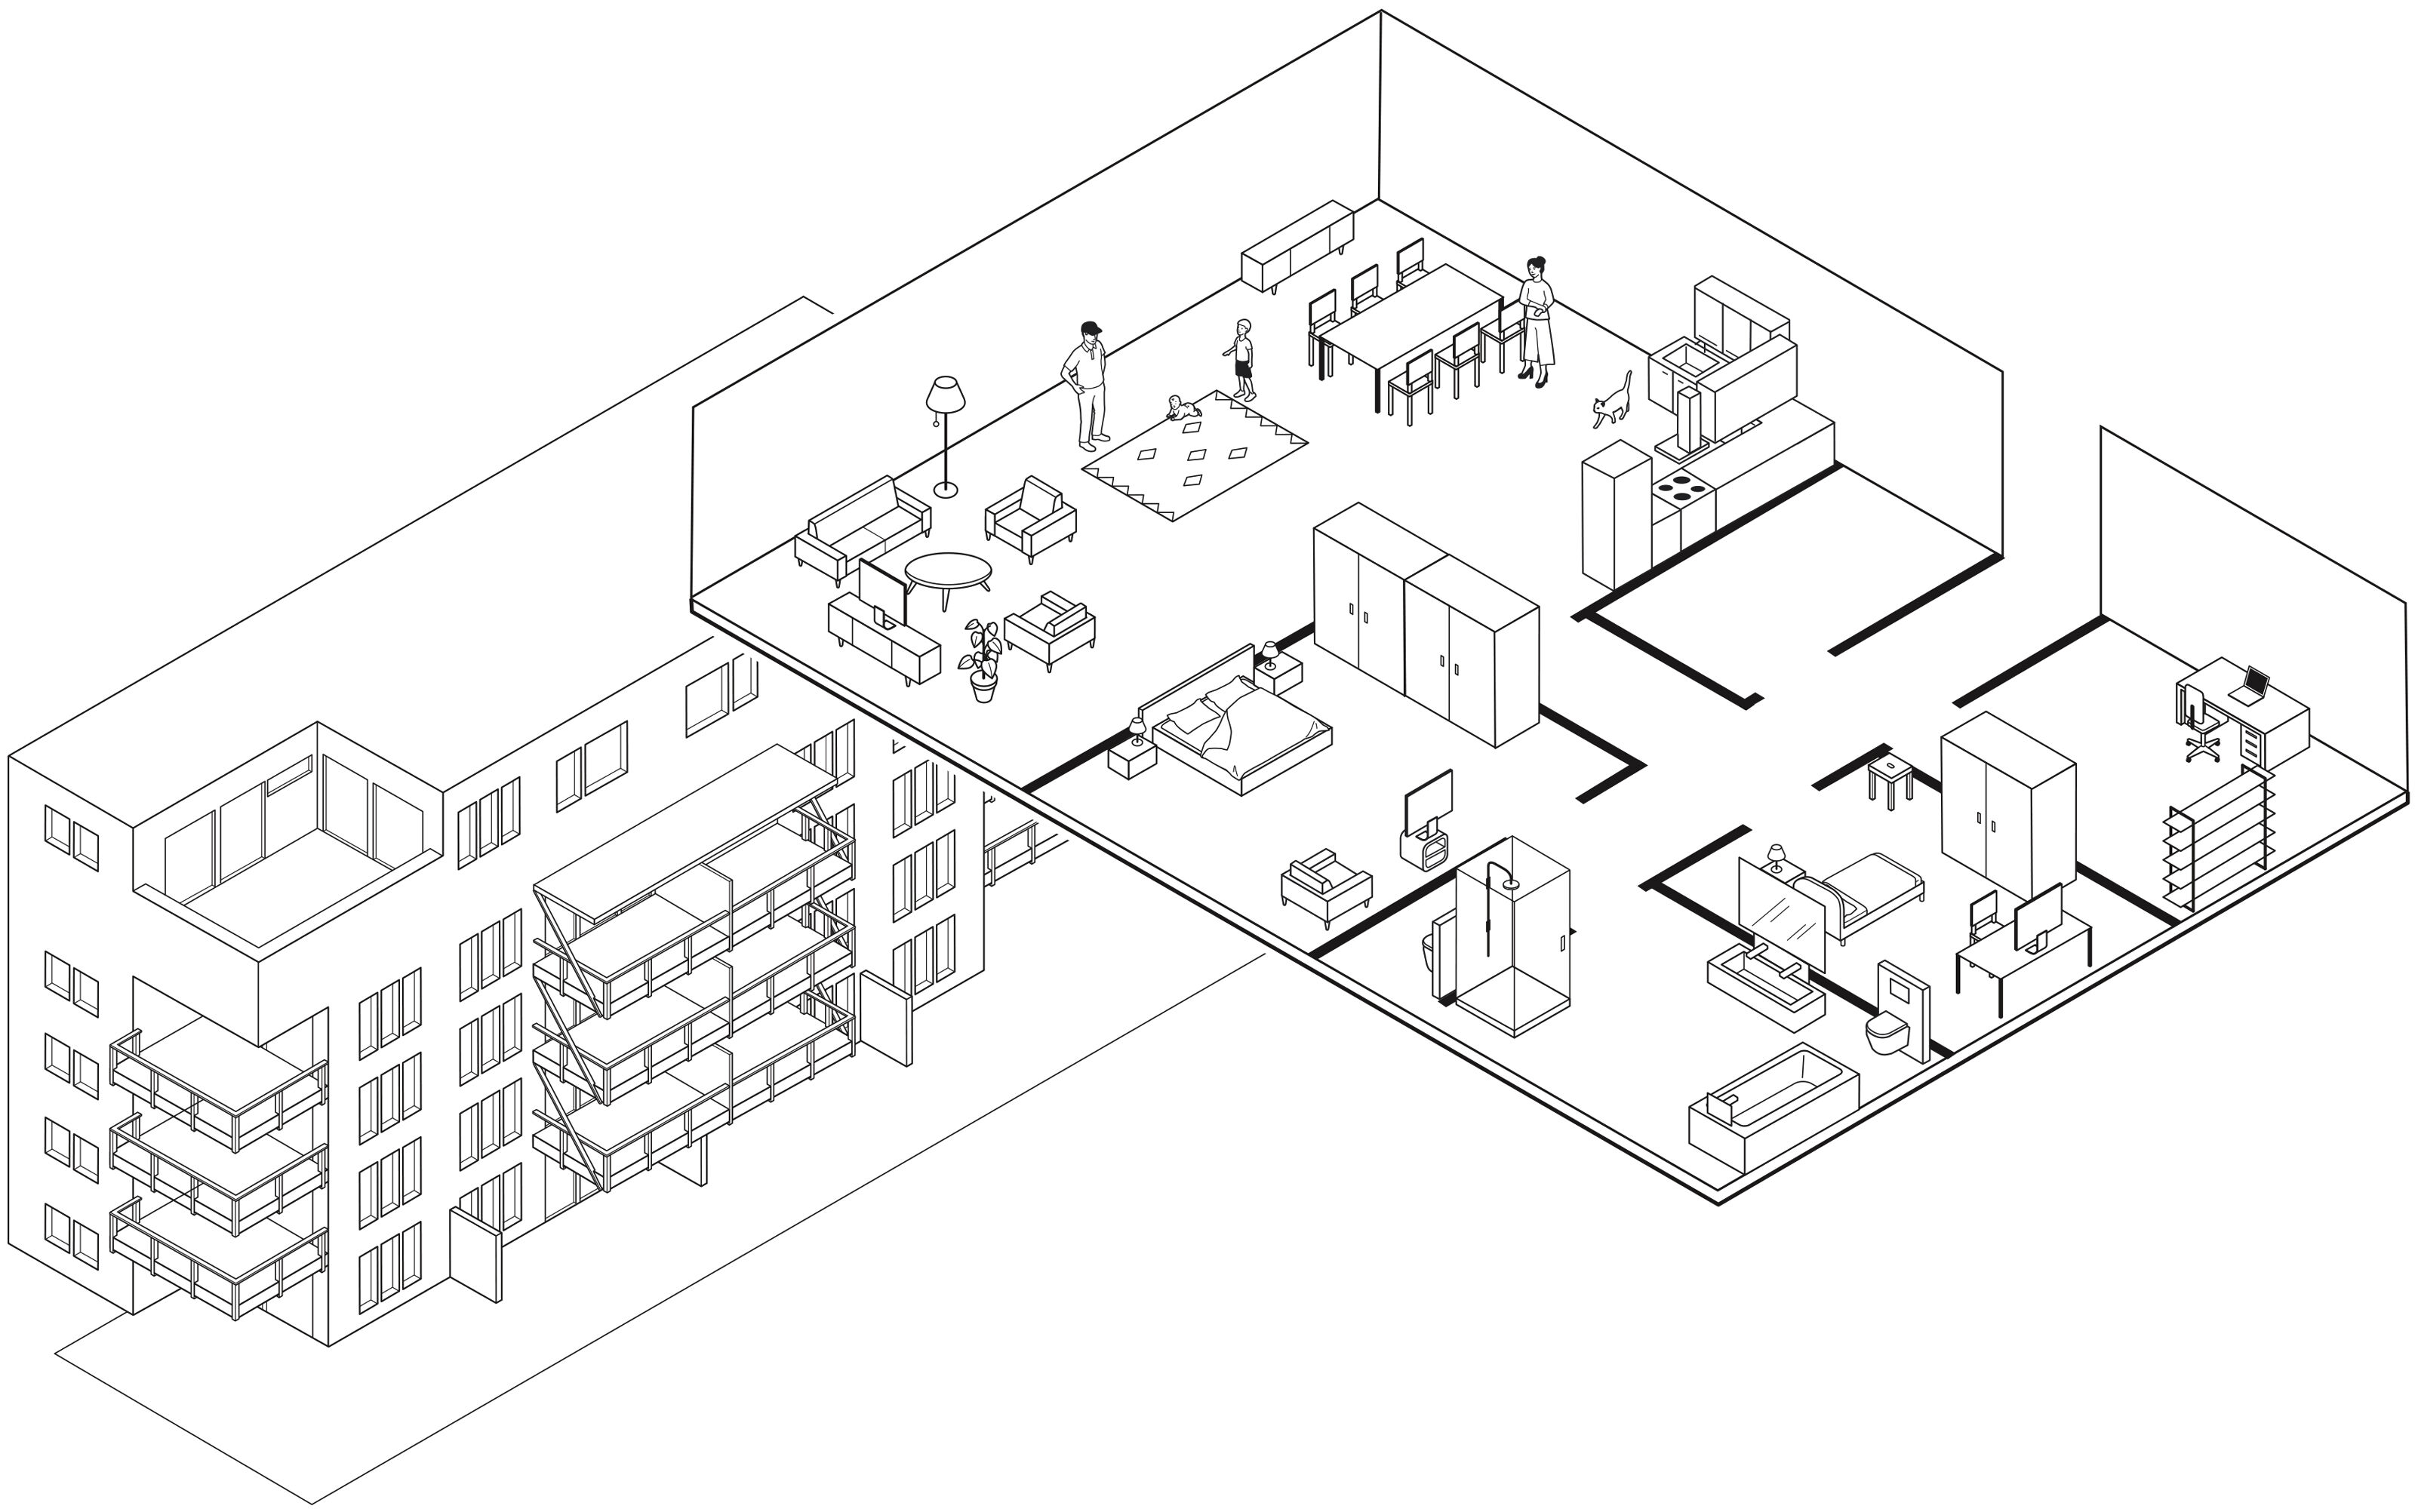 oculus-illustration-architektur-ausstellung-zeichnung-isometrie-wohnen-musterwohnung